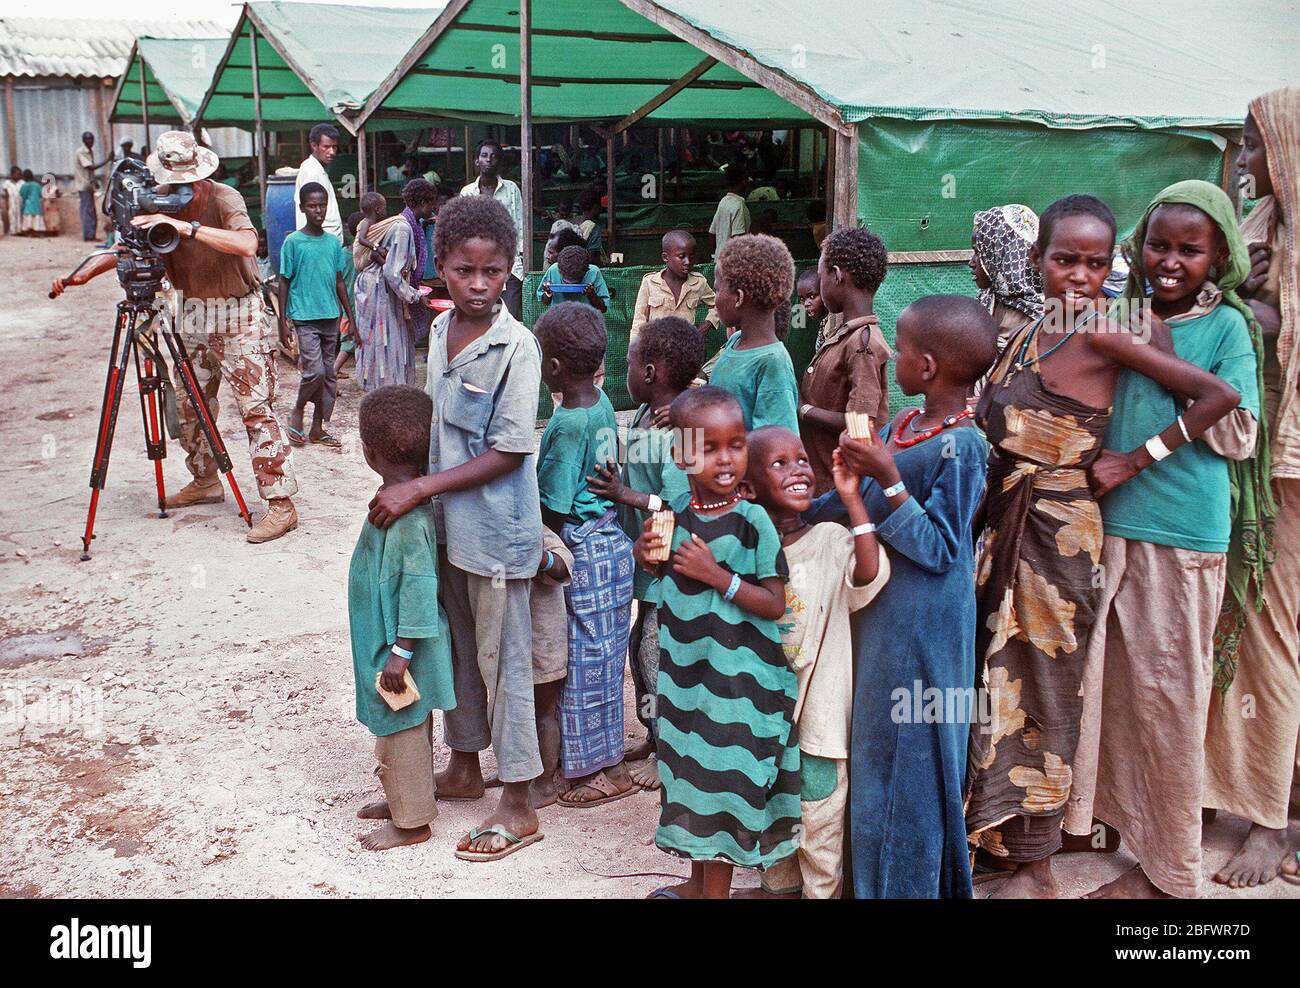 1993 - capo fotografo il compagno di Robert Sasek videotape somali allineando per un pasto presso la preoccupazione del centro di alimentazione durante la multinazionale soccorsi RESTORE HOPE. Il centro è gestito dagli irlandesi in rilievo la preoccupazione dell'organizzazione. Foto Stock